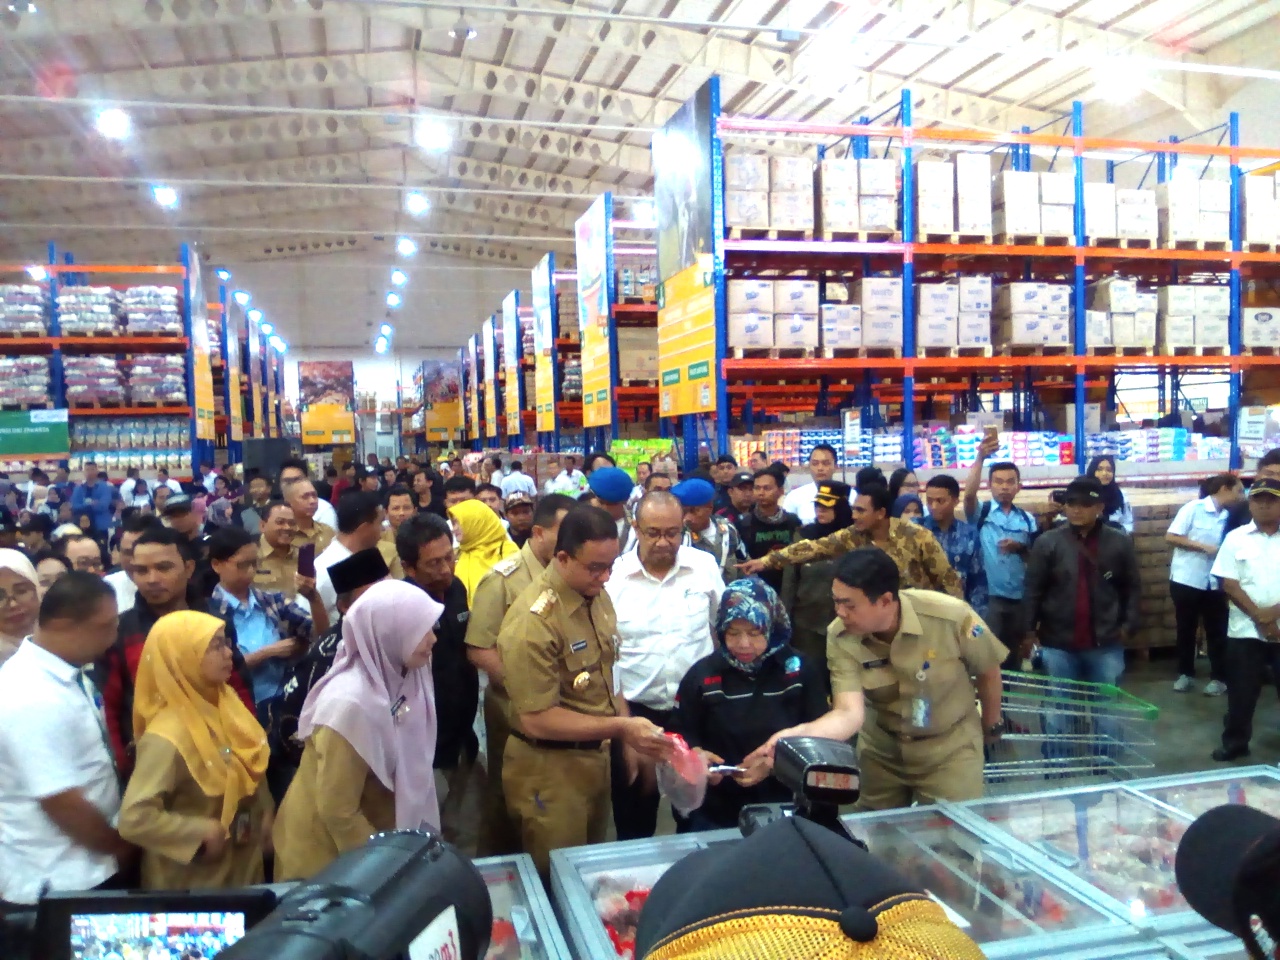 Gubernur Anies meninjau penjualan kebutuhan warga di Jakgrosir, Pasar Induk, Senin 31 Desember 2018 (foto terasjakarta.id)